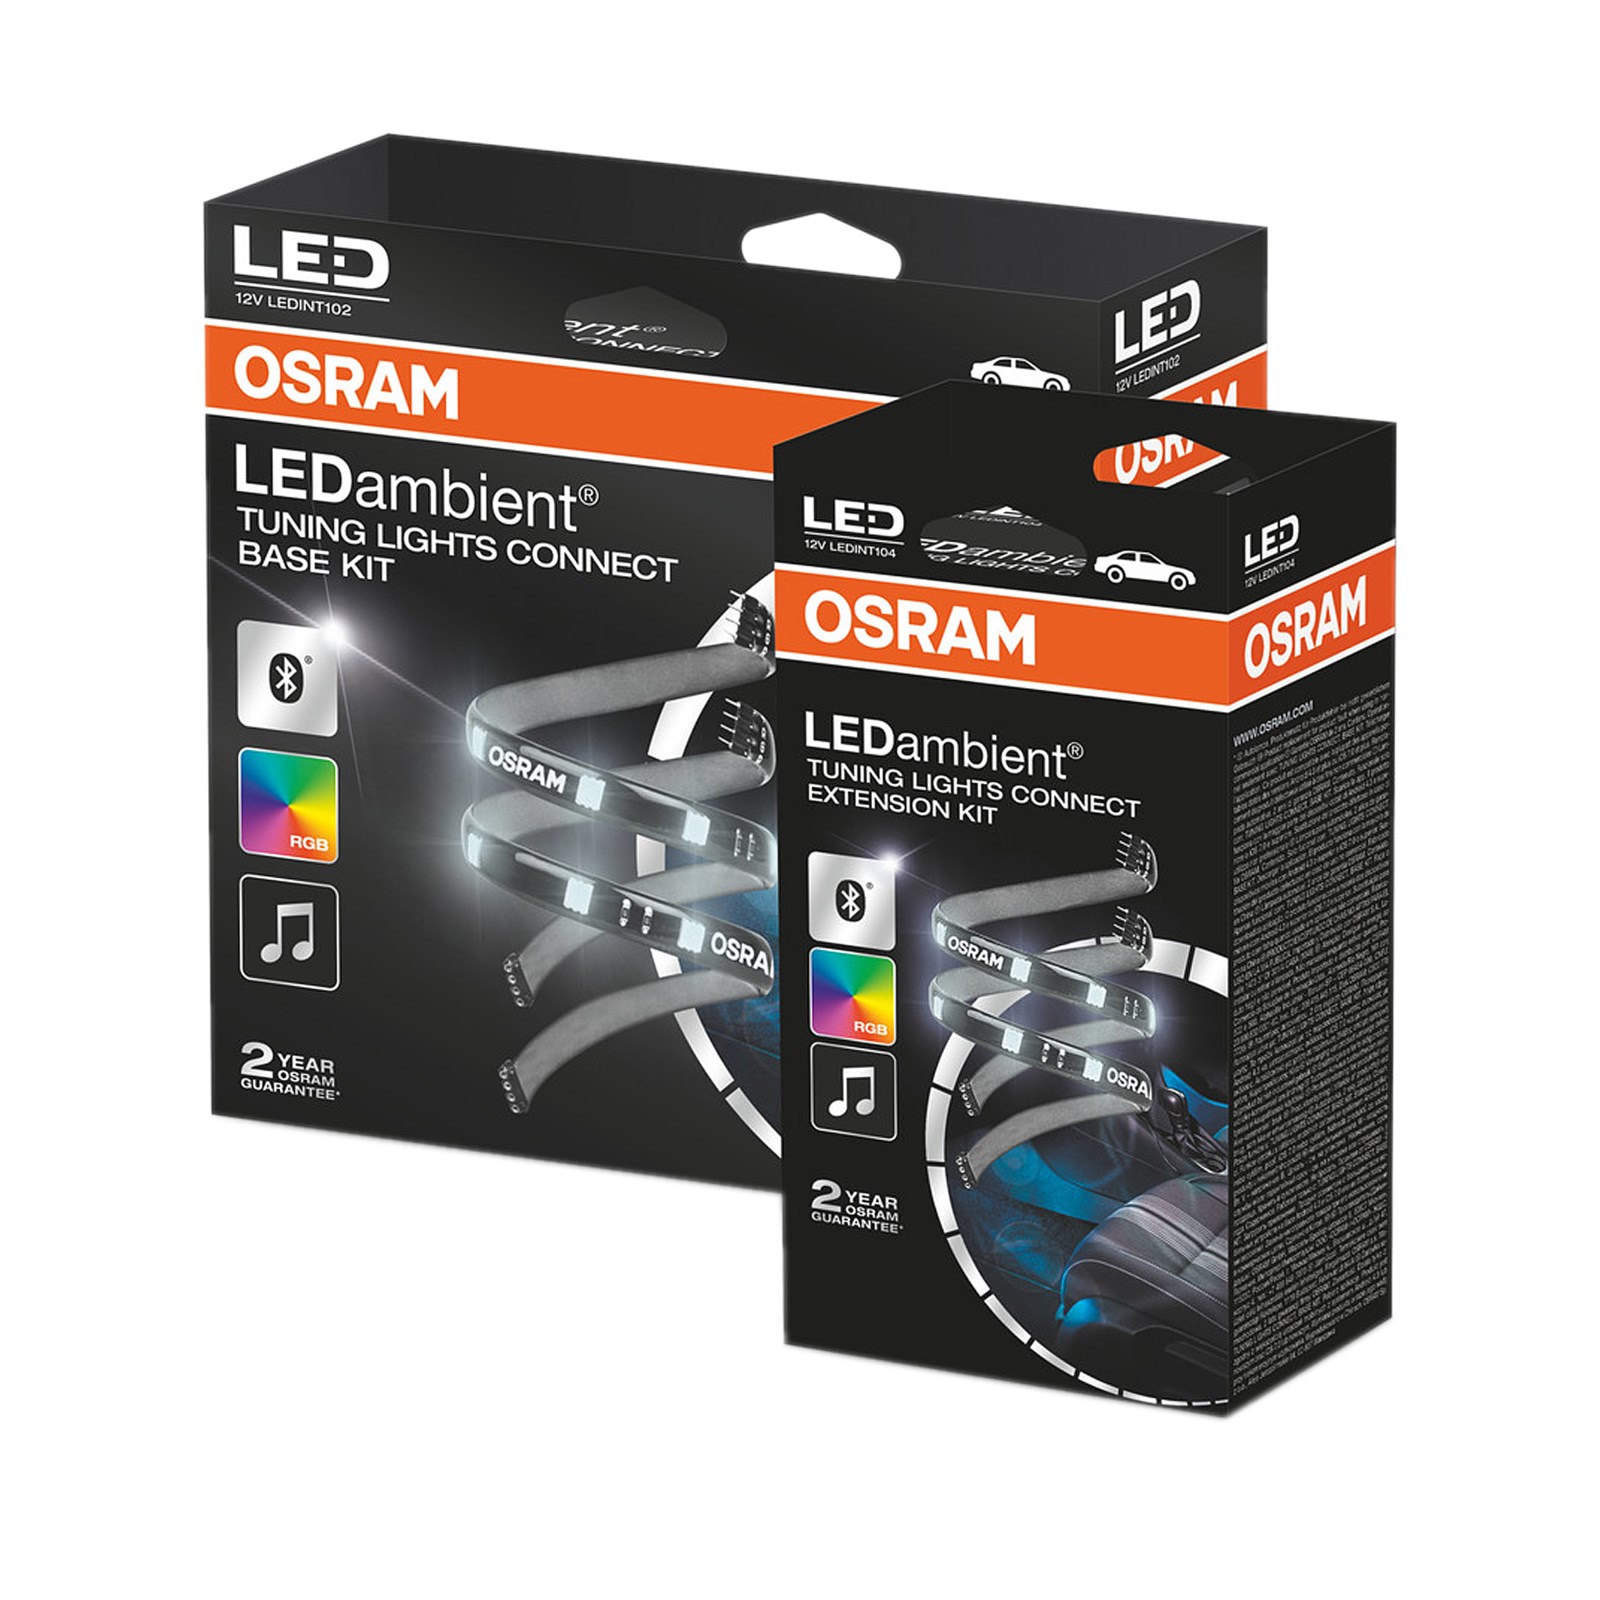 Osram LEDINT201-SEC LED Ambient Tuning Luci Base Kit